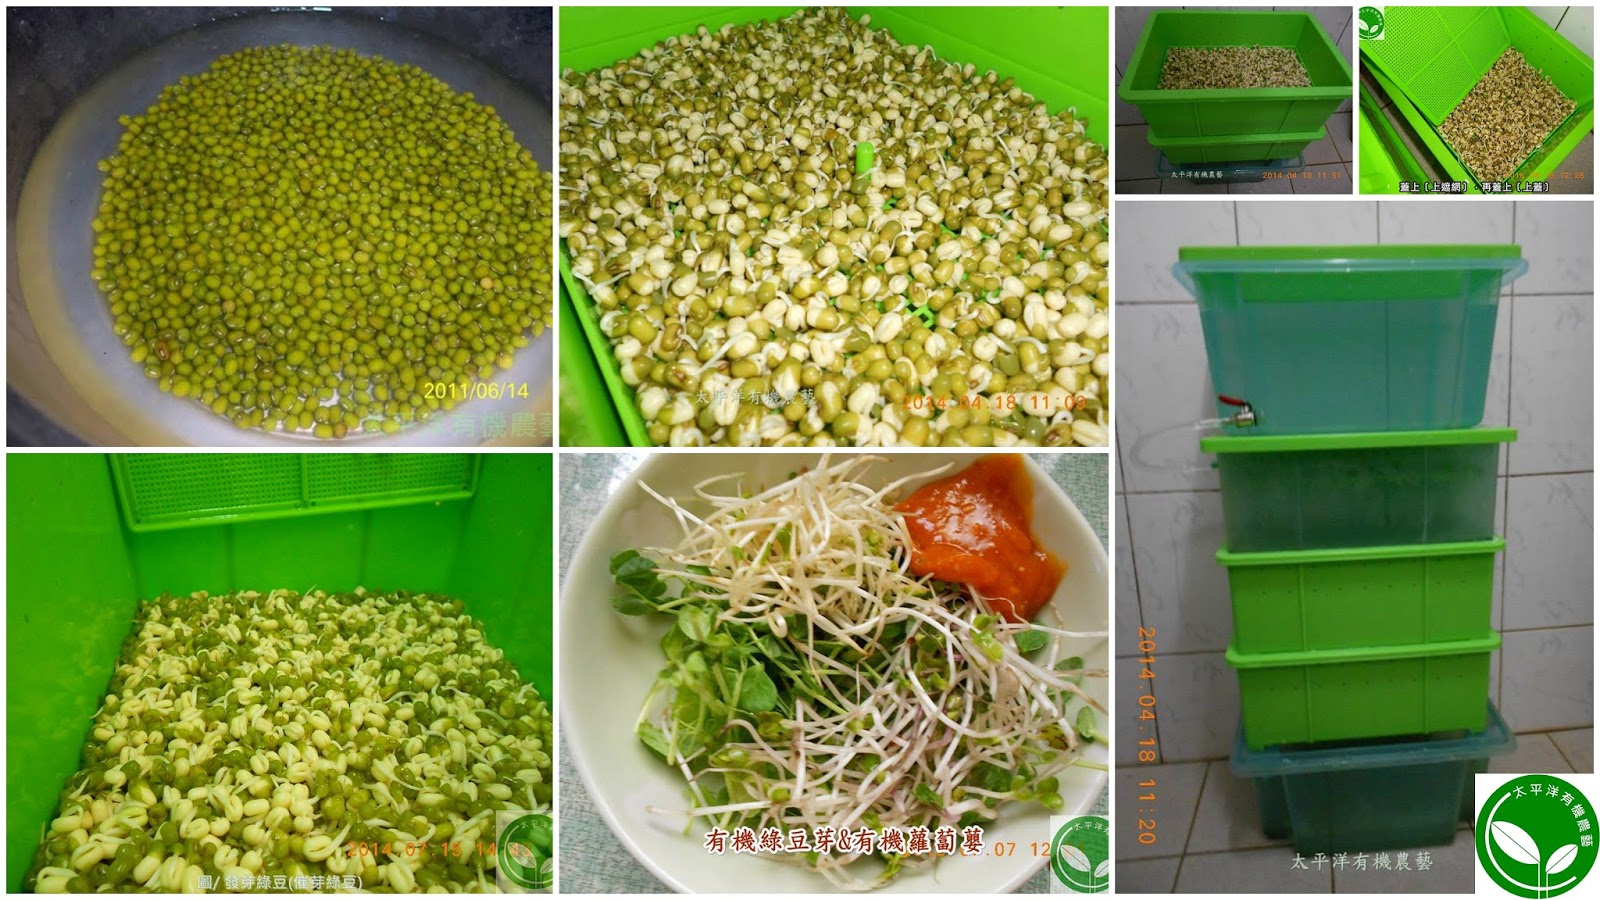 綠豆,綠豆的功效,綠豆子,韓式涼拌豆芽菜食譜,豆芽,種綠豆,發綠豆芽,如何發綠豆芽,炒豆芽菜,種綠豆生長過程